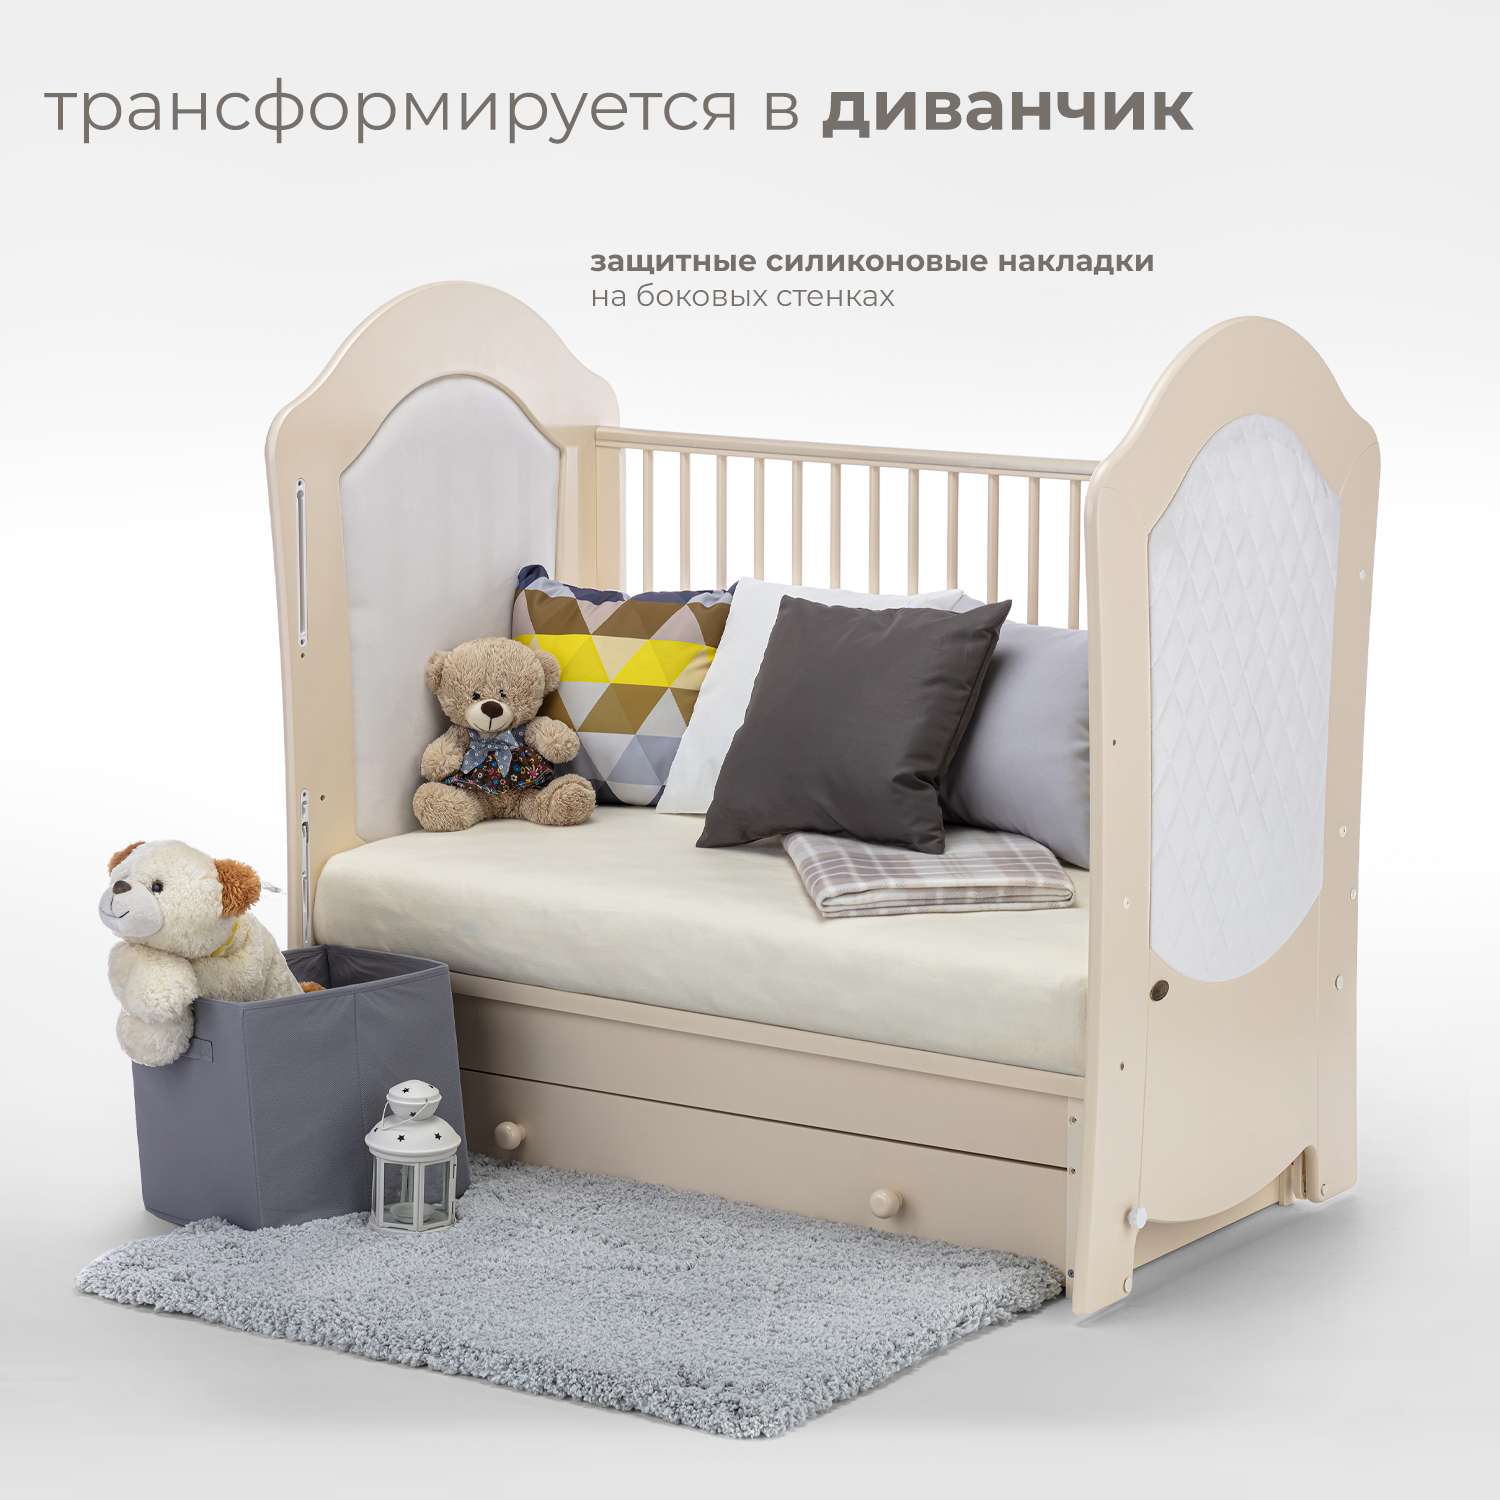 Детская кроватка Nuovita Tempi Swing прямоугольная, поперечный маятник (слоновая кость) - фото 6